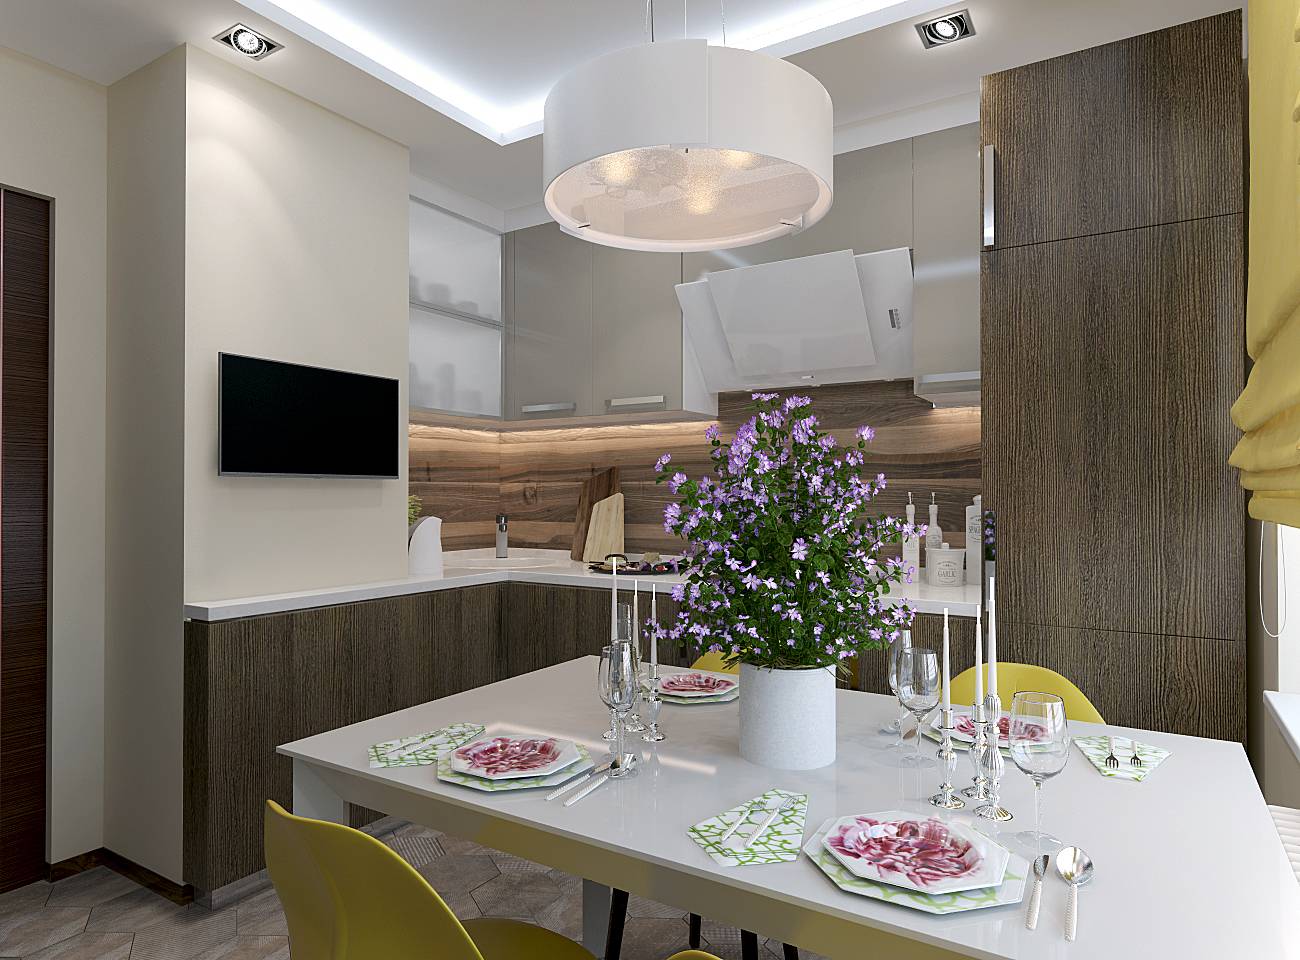 Кухни п-44т с эркером (46 фото): планировка комнаты в зависимости от размеров, шторы и мебель в дизайне интерьера